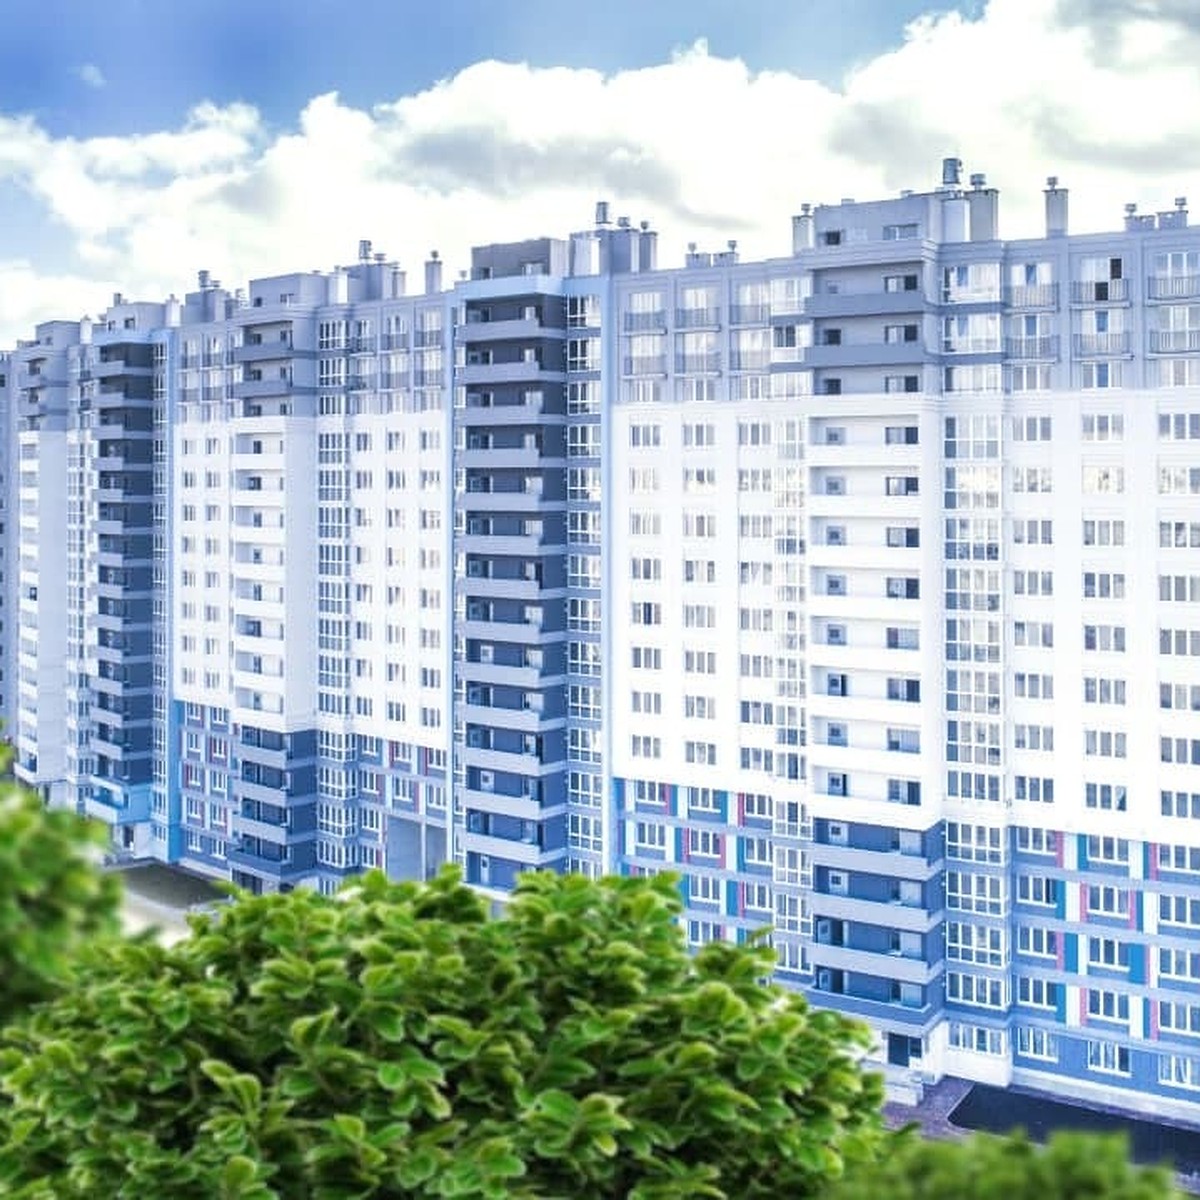 Купить дом в Калининграде, продажа жилых домов недорого: частных, загородных